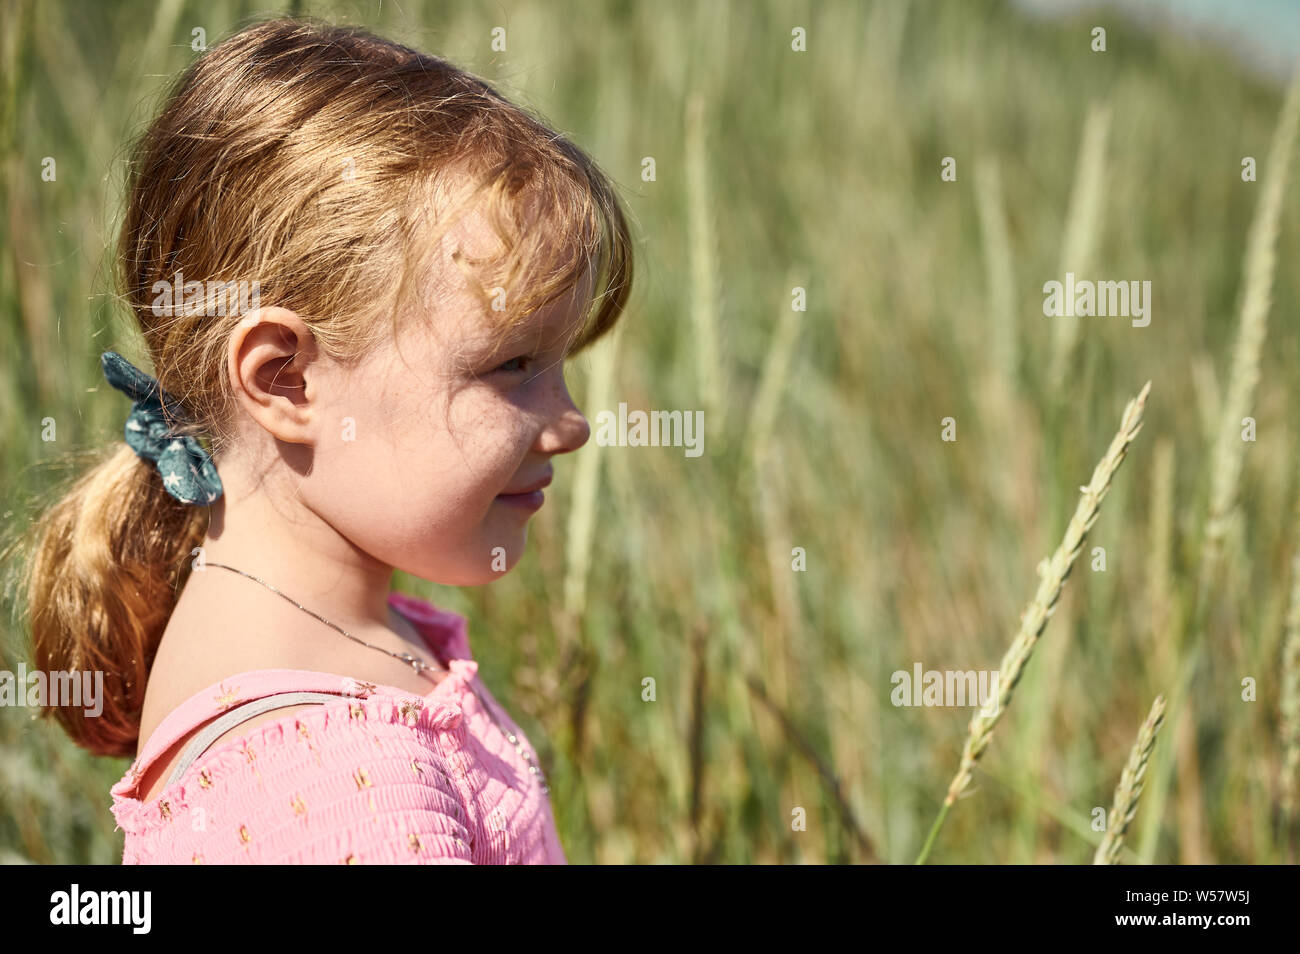 Seitenansicht des kleinen adorable blonde Mädchen mit schüchternen Lächeln im Feld auf Grotta Insel auf unscharfen Hintergrund Stockfoto